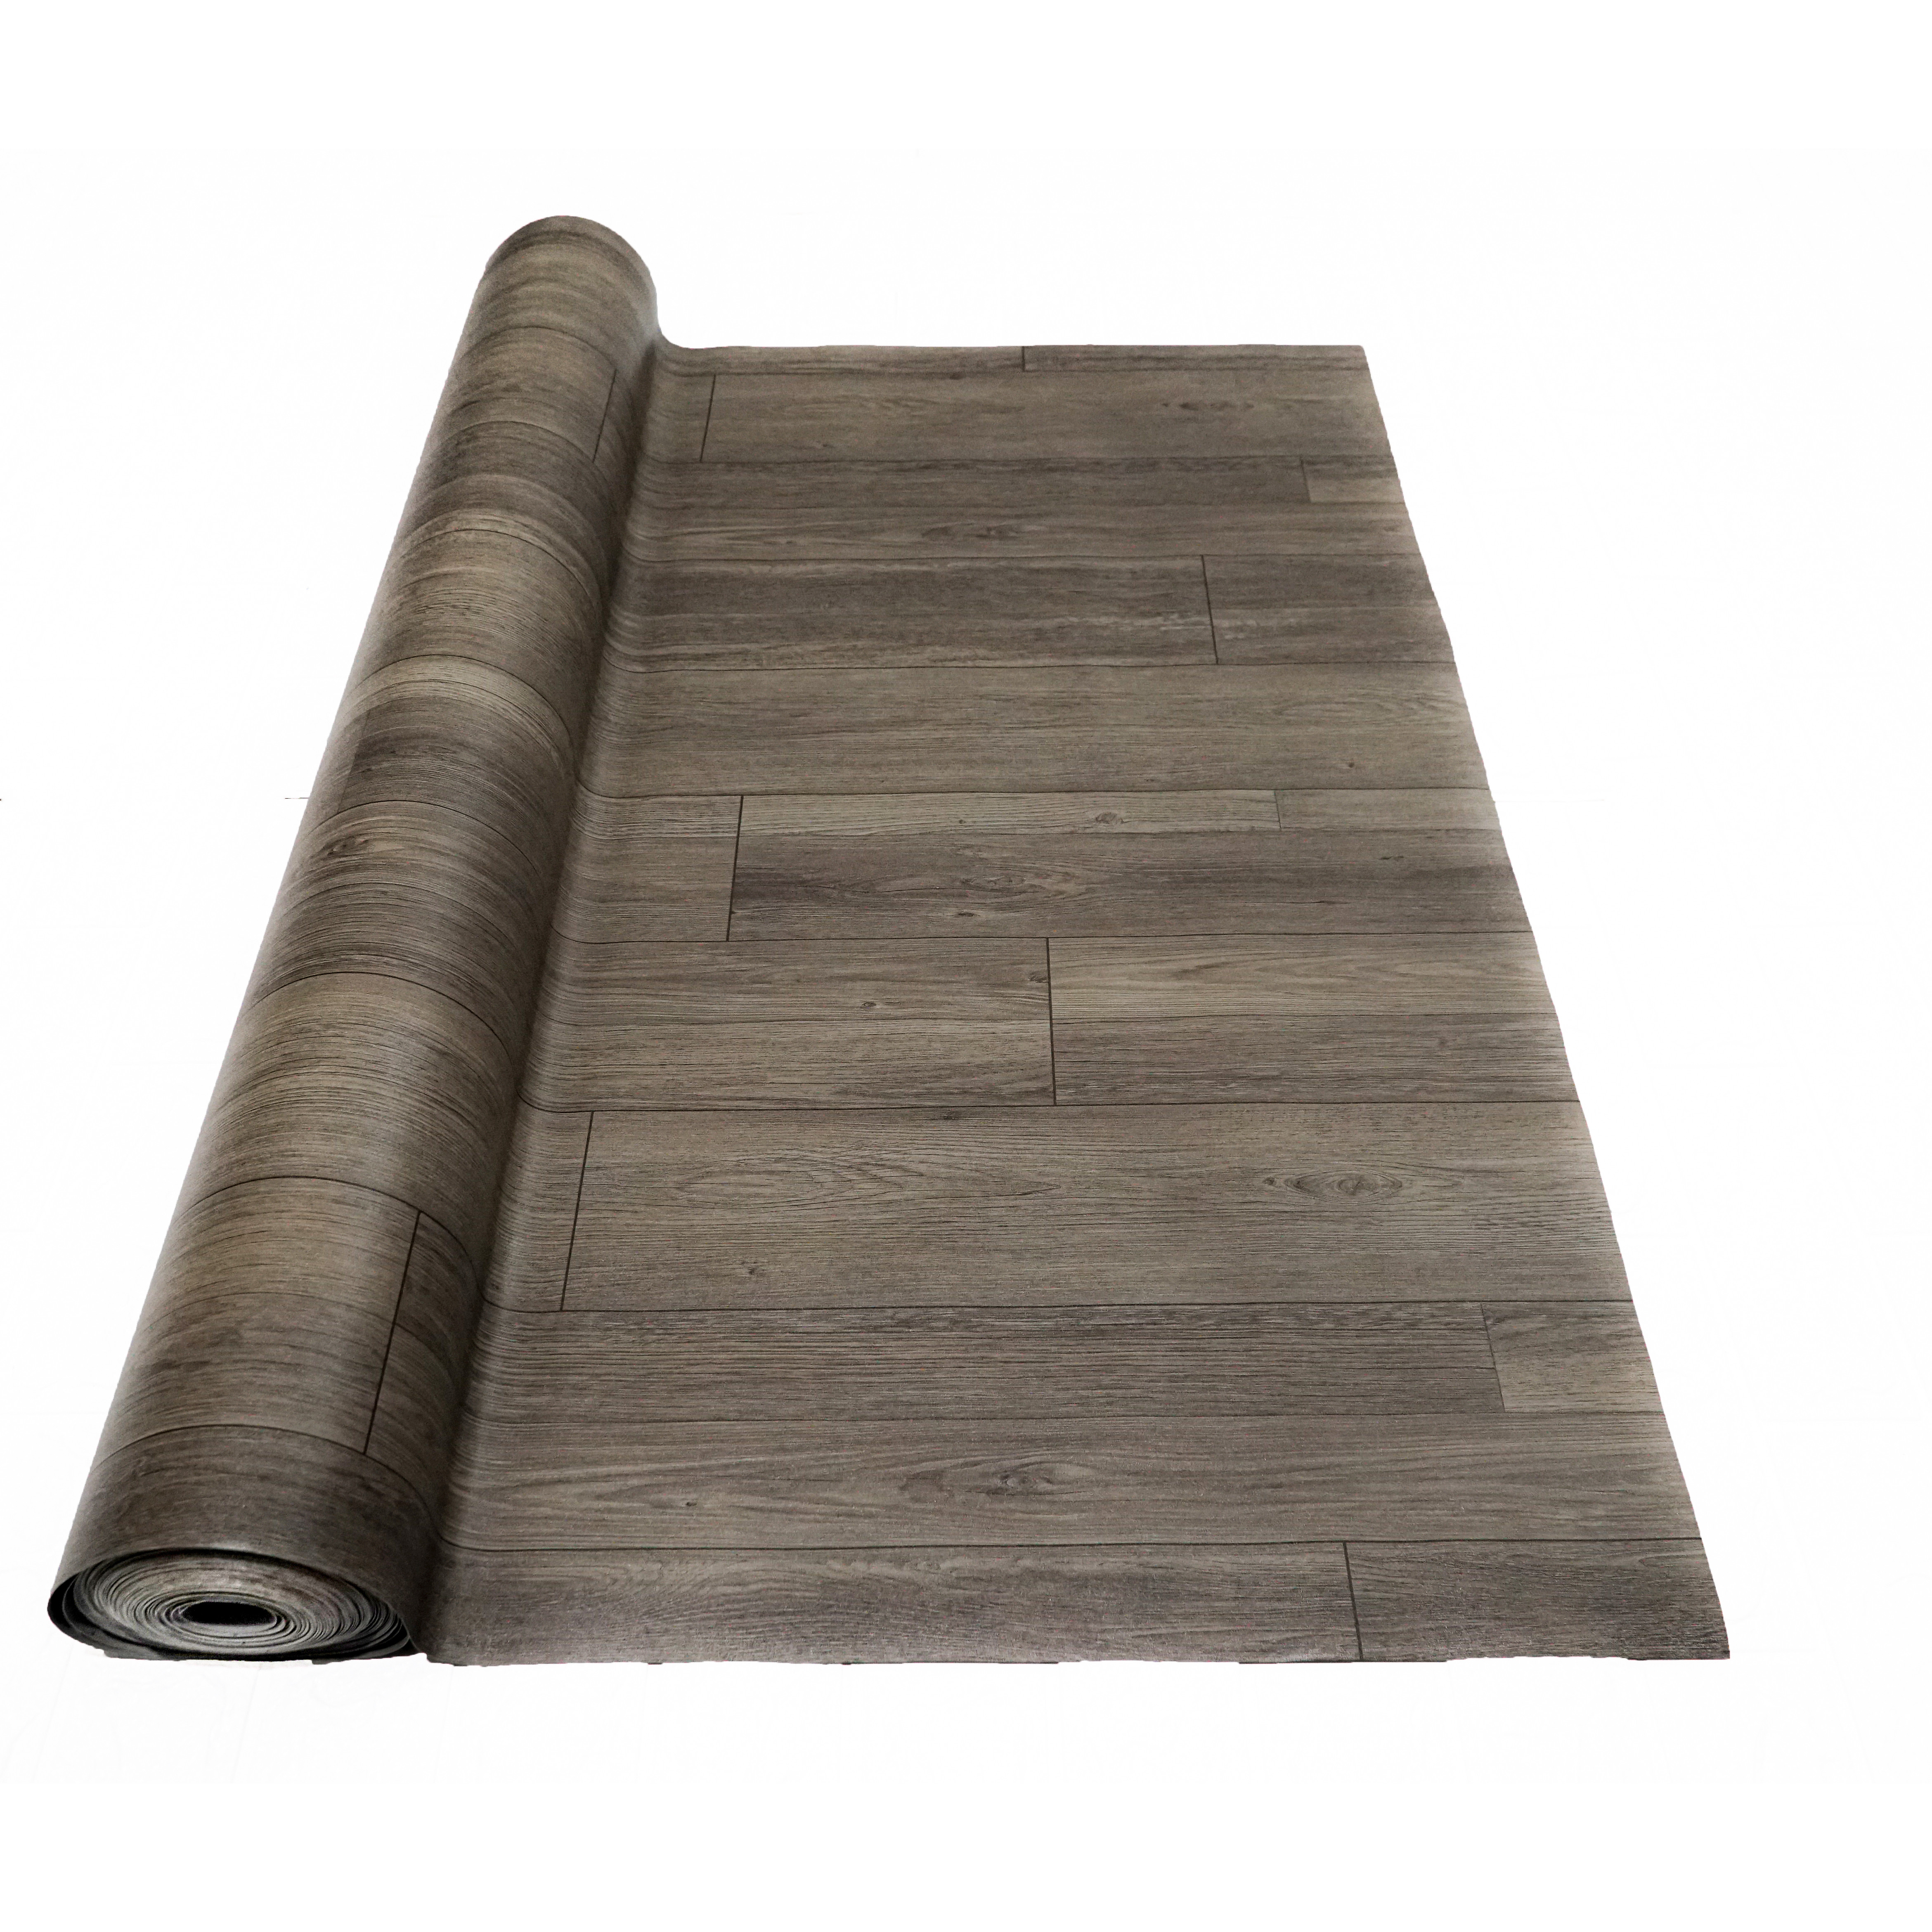 Thảm nhựa simili trải sàn vân gỗ màu xám siêu bền, chống nước tuyệt đối